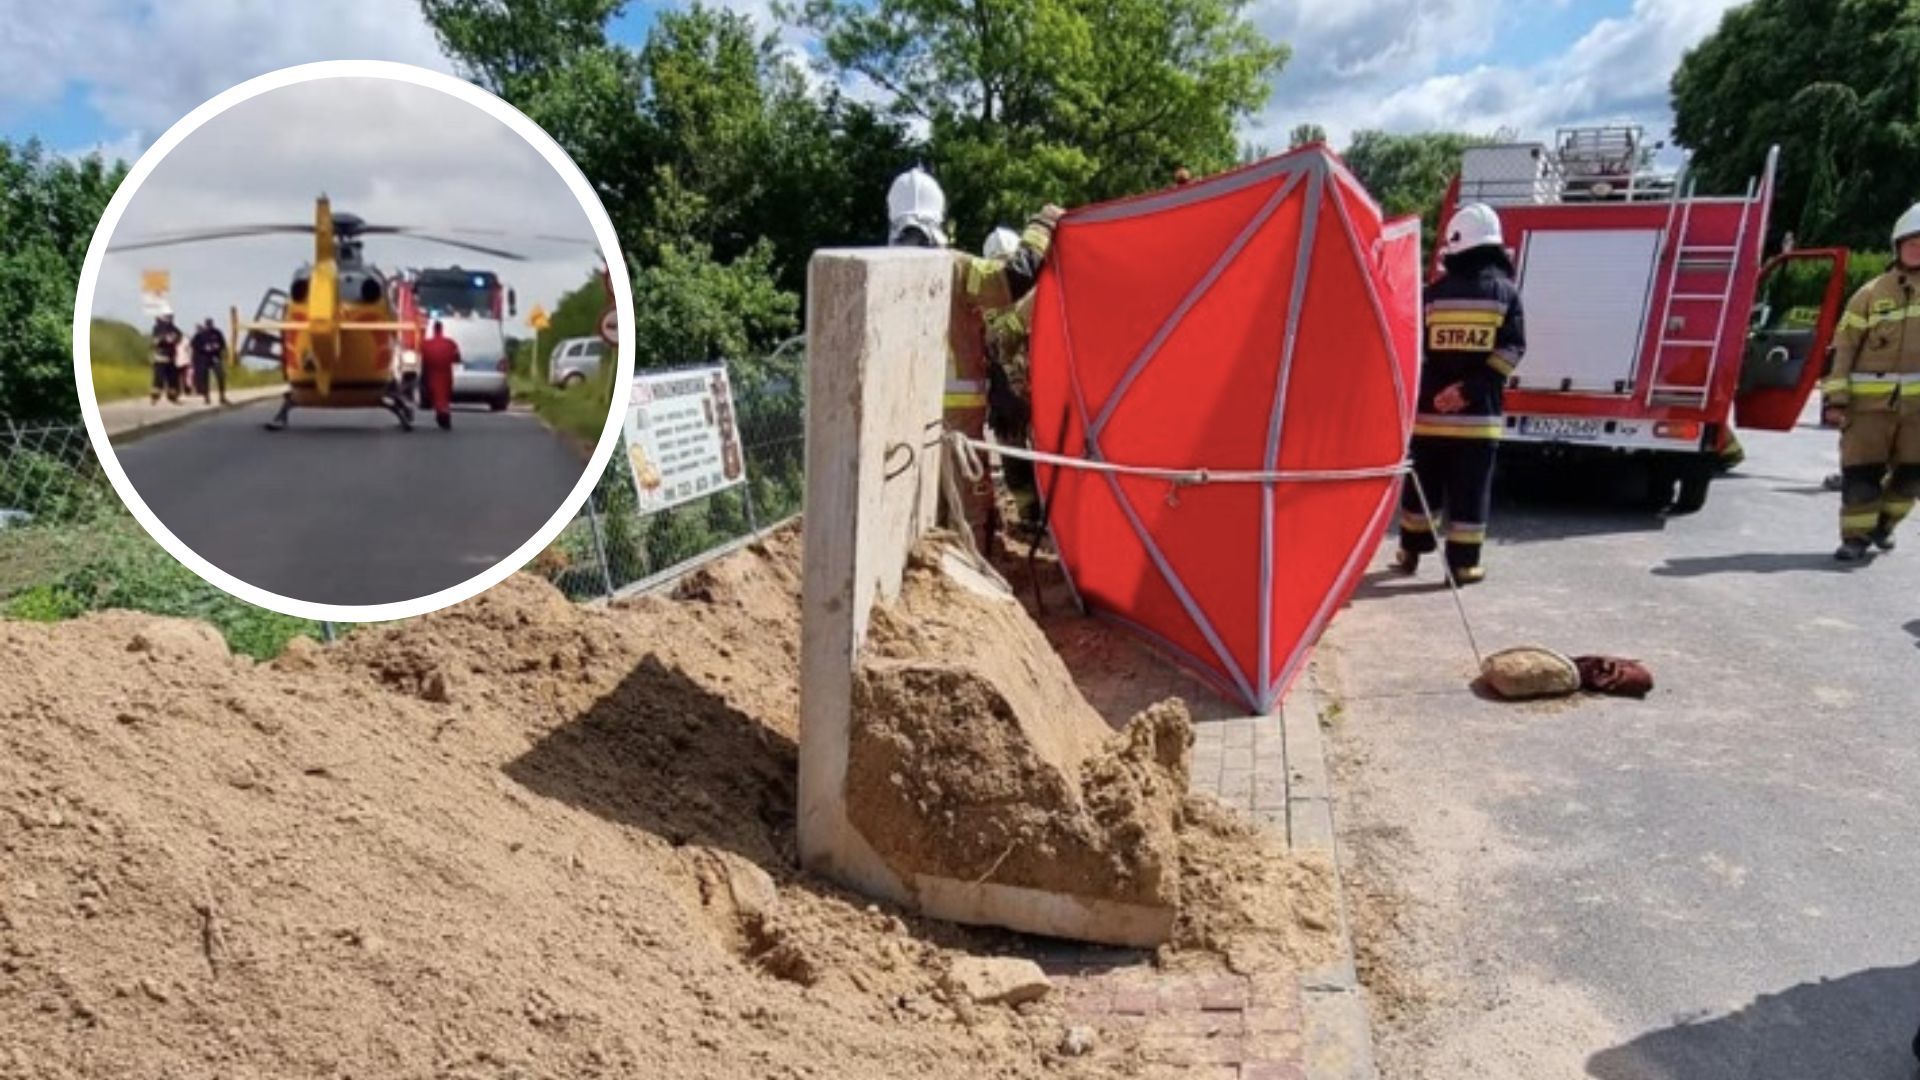 Wielkopolska: robotnik zginął przygnieciony betonową płytą, osunęła się ziemia